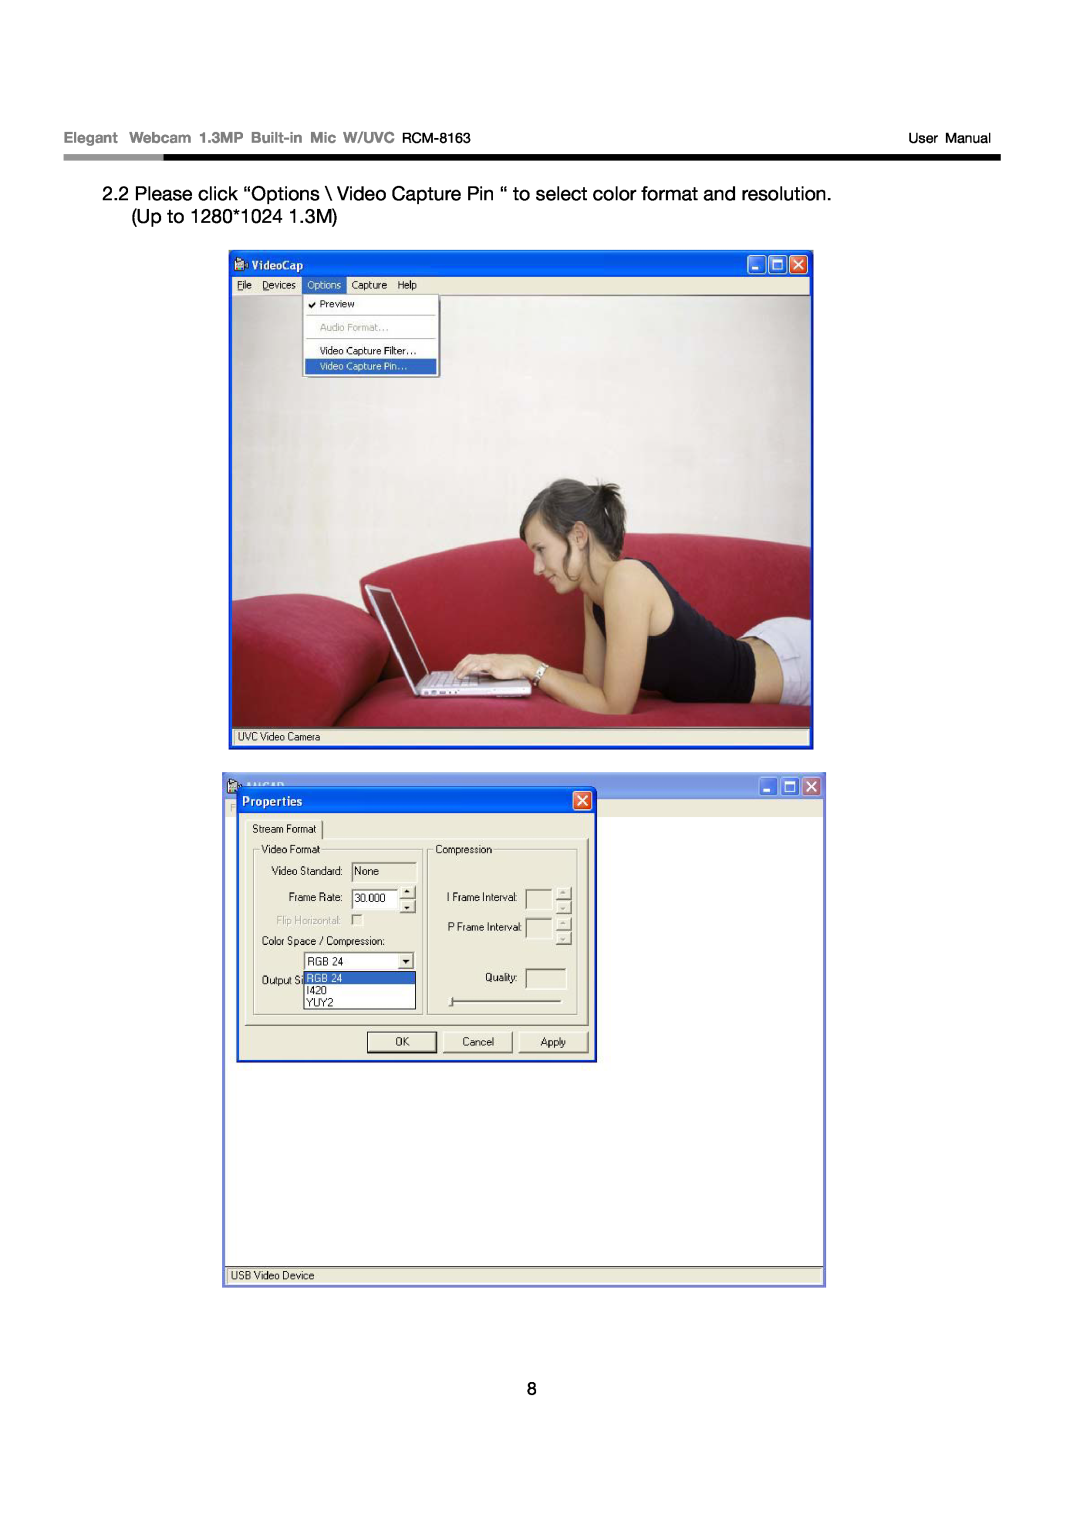 Rosewill user manual Elegant Webcam 1.3MP Built-in Mic W/UVC RCM-8163, User Manual 